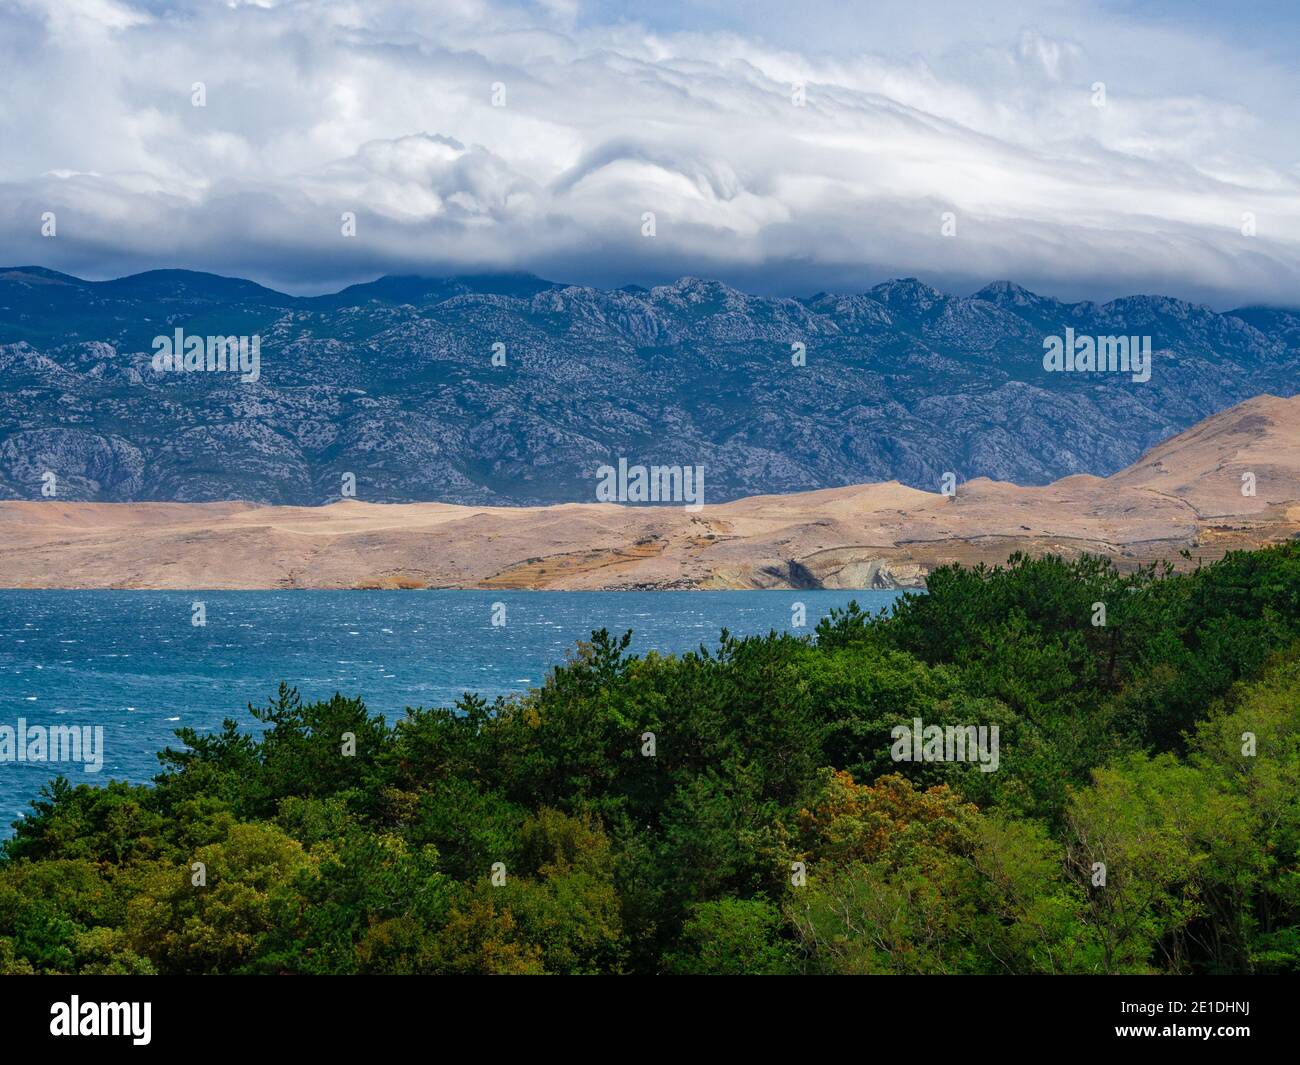 Des nuages en sens inverse. Nuages sur les collines de l'île de Pag en Croatie. Vue de dessus de la baie entourée de montagnes et de verdure. Banque D'Images